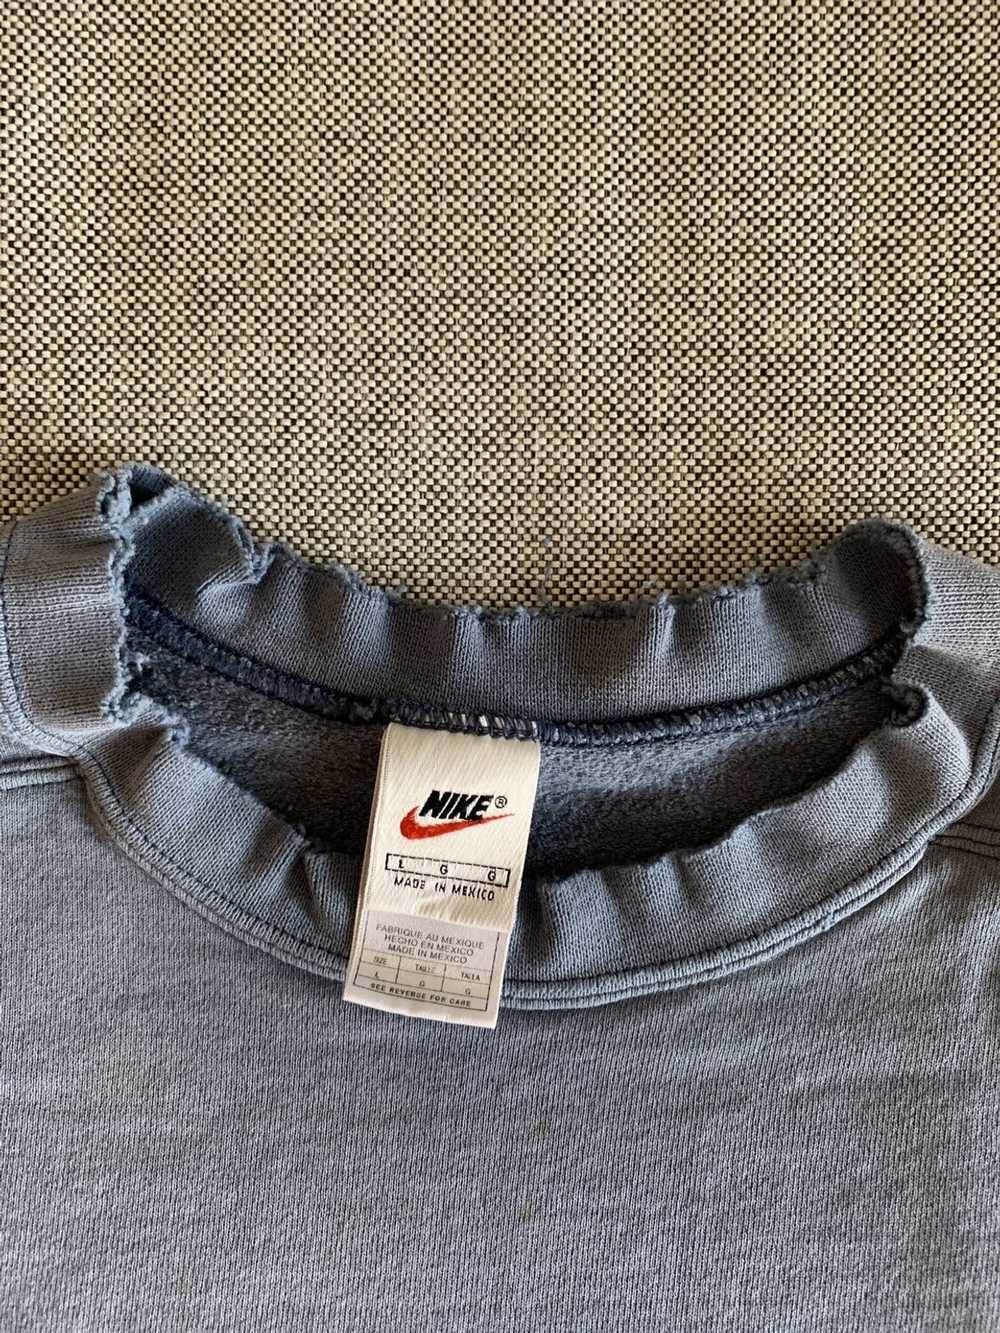 Nike × Vintage Vintage 90s Nike Sweatshirt Crewne… - image 5